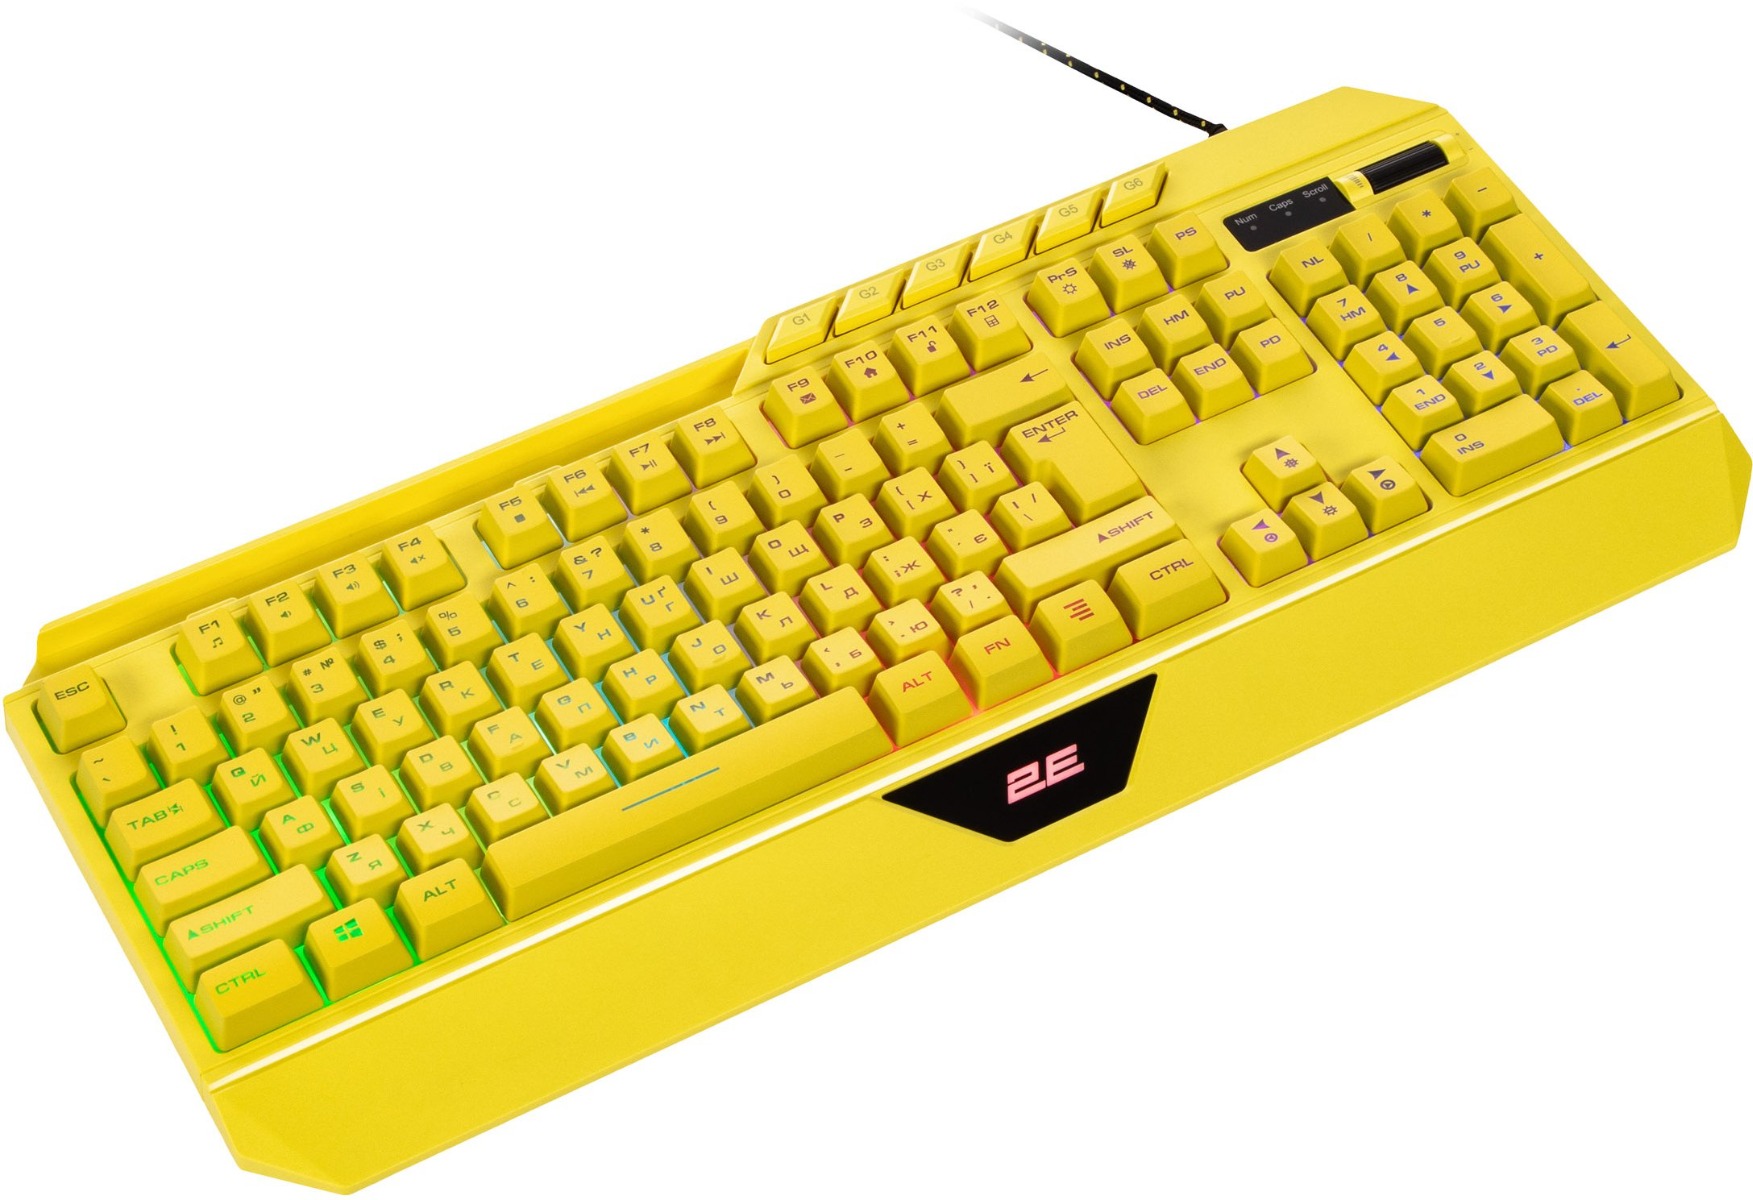 Клавіатура 2E Gaming KG315 RGB USB Yellow (2E-KG315UYW)